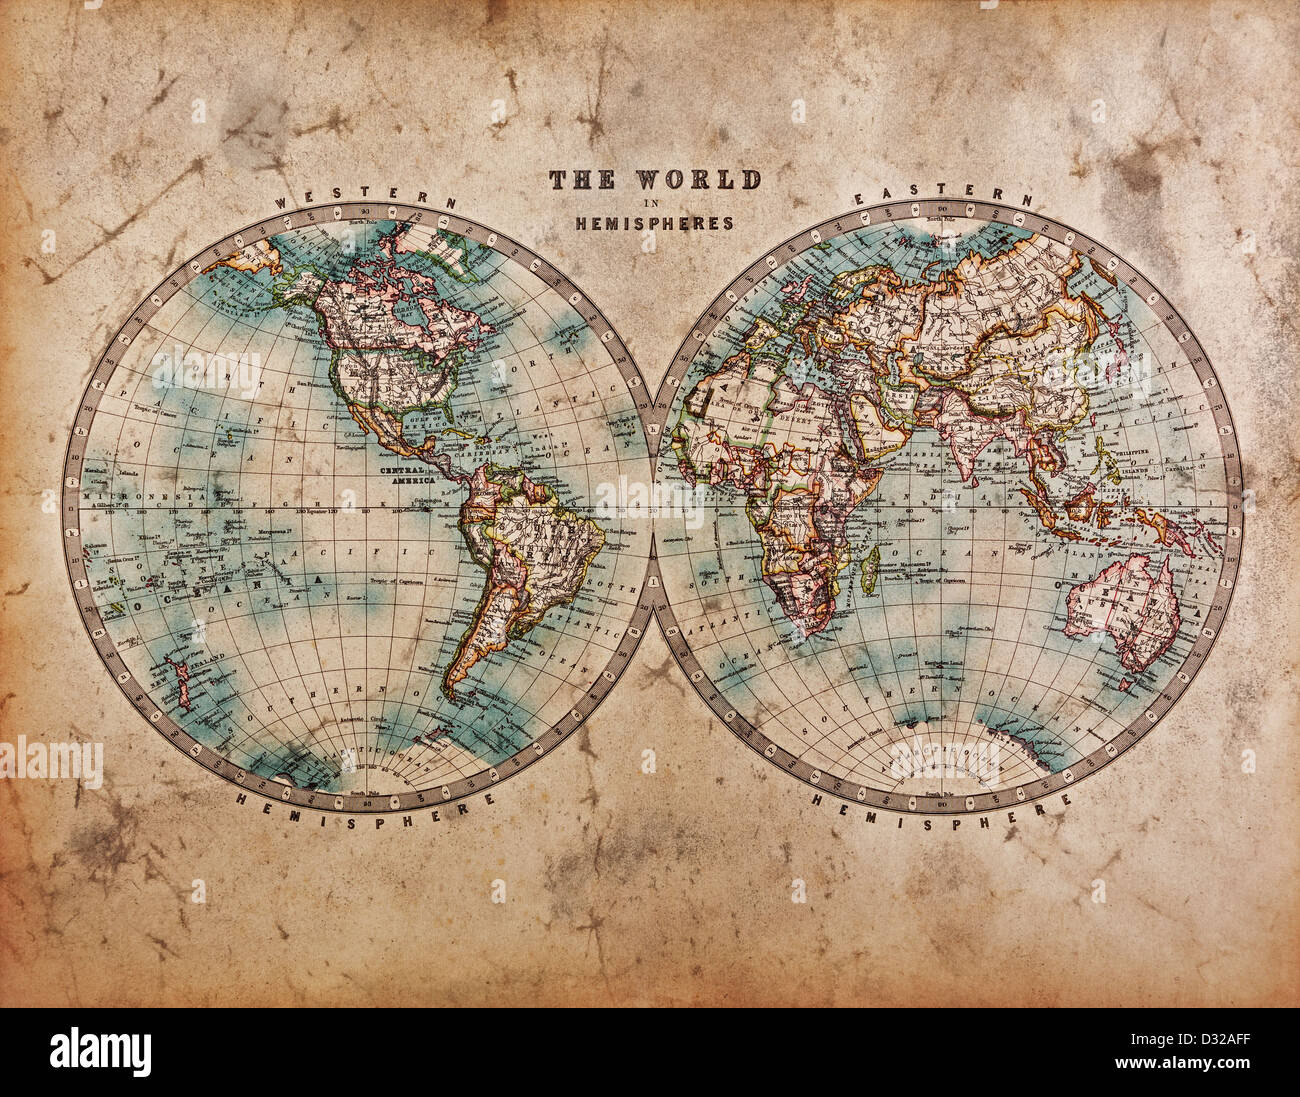 Une véritable carte du monde de vitraux anciens, datant du milieu des années 1800, montrant l'Hémisphère Occidentale et Orientale avec coloration à la main. Banque D'Images